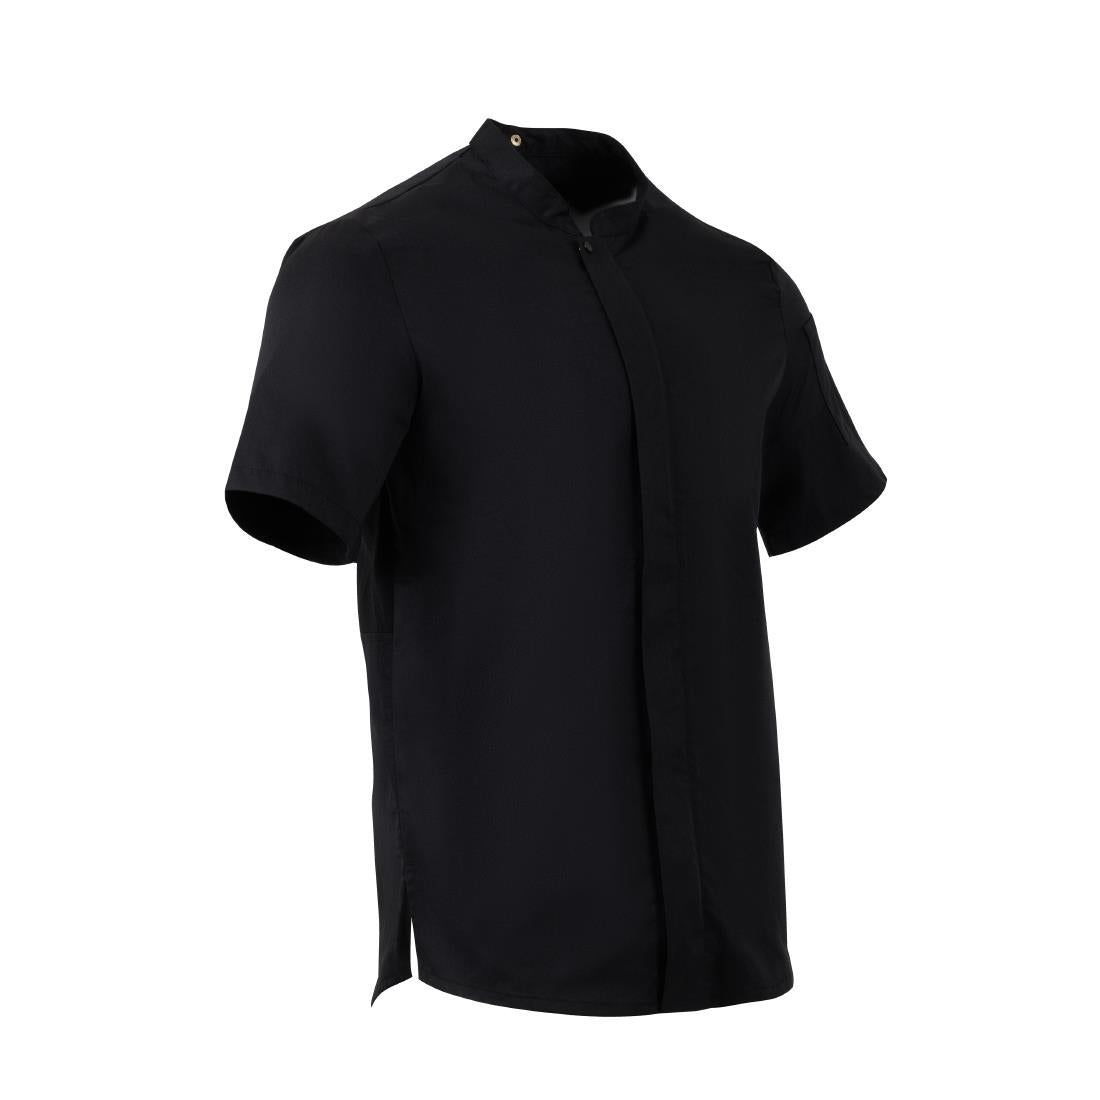 BA115-L Southside Harlem Short Sleeve Chef Jacket Black Size L